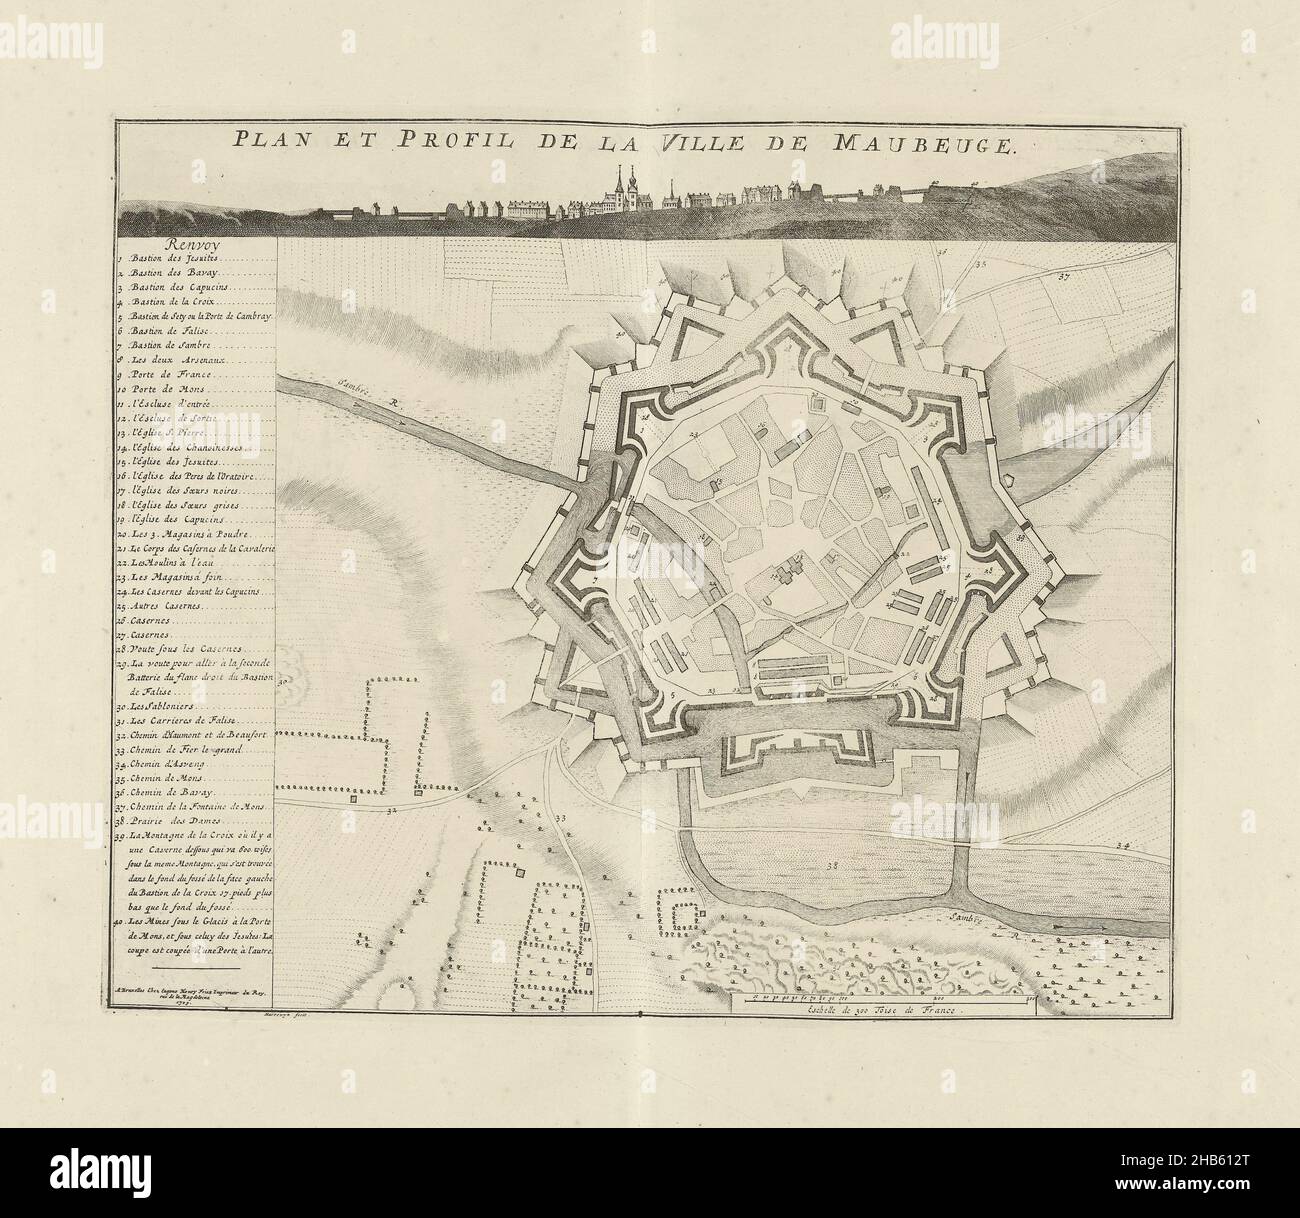 Map of Maubeuge, 1709, Plan et Profil de la ville de Maubeuge (title on  object), Map of Maubeuge, 1709. Profile of the town at the top, legend 1-40  on the left. Part